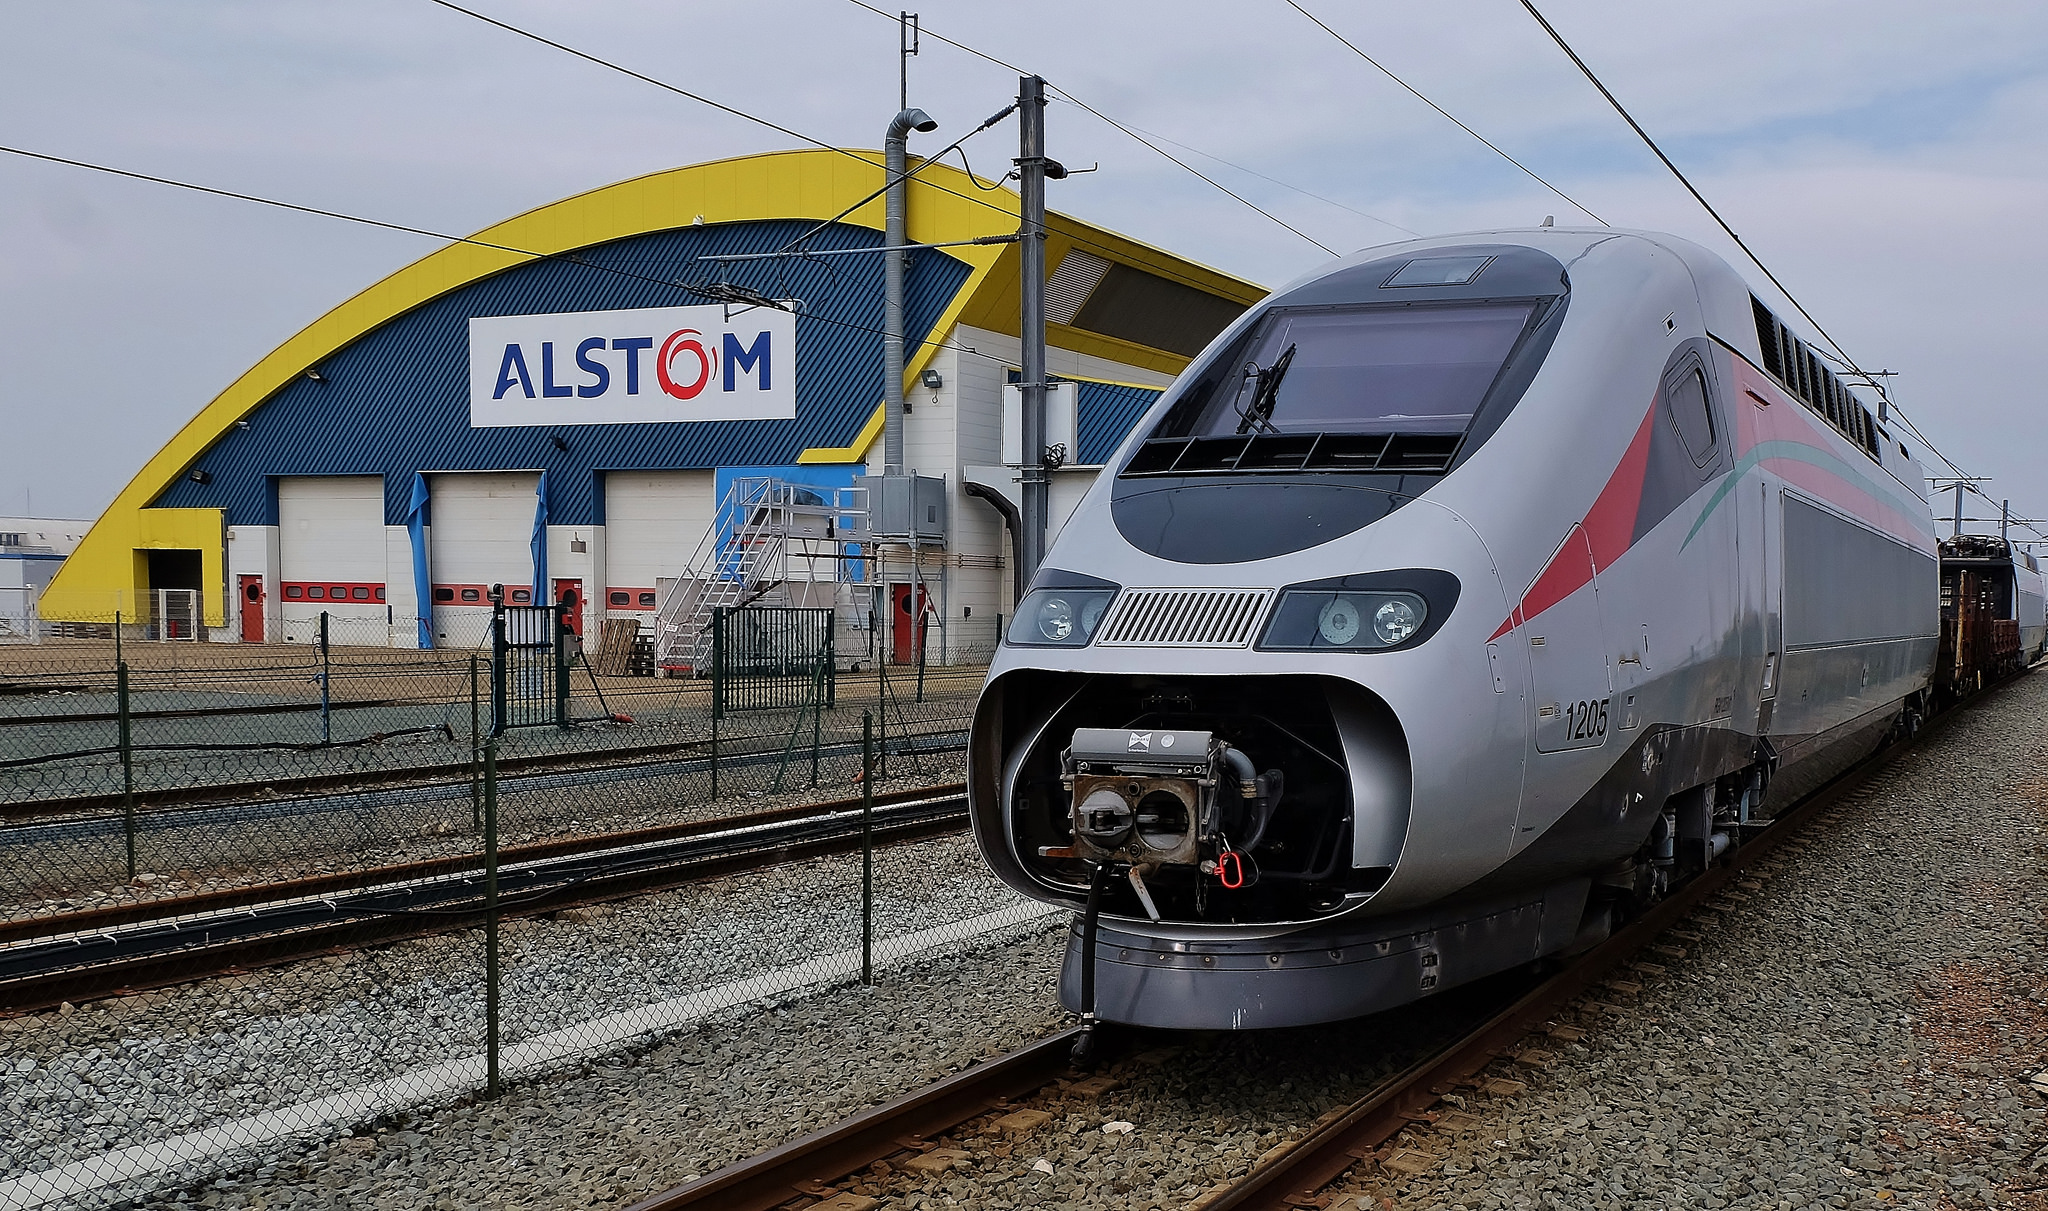 Alstom 400 Assunzioni: Opportunità di Lavoro nel Settore Ferroviario